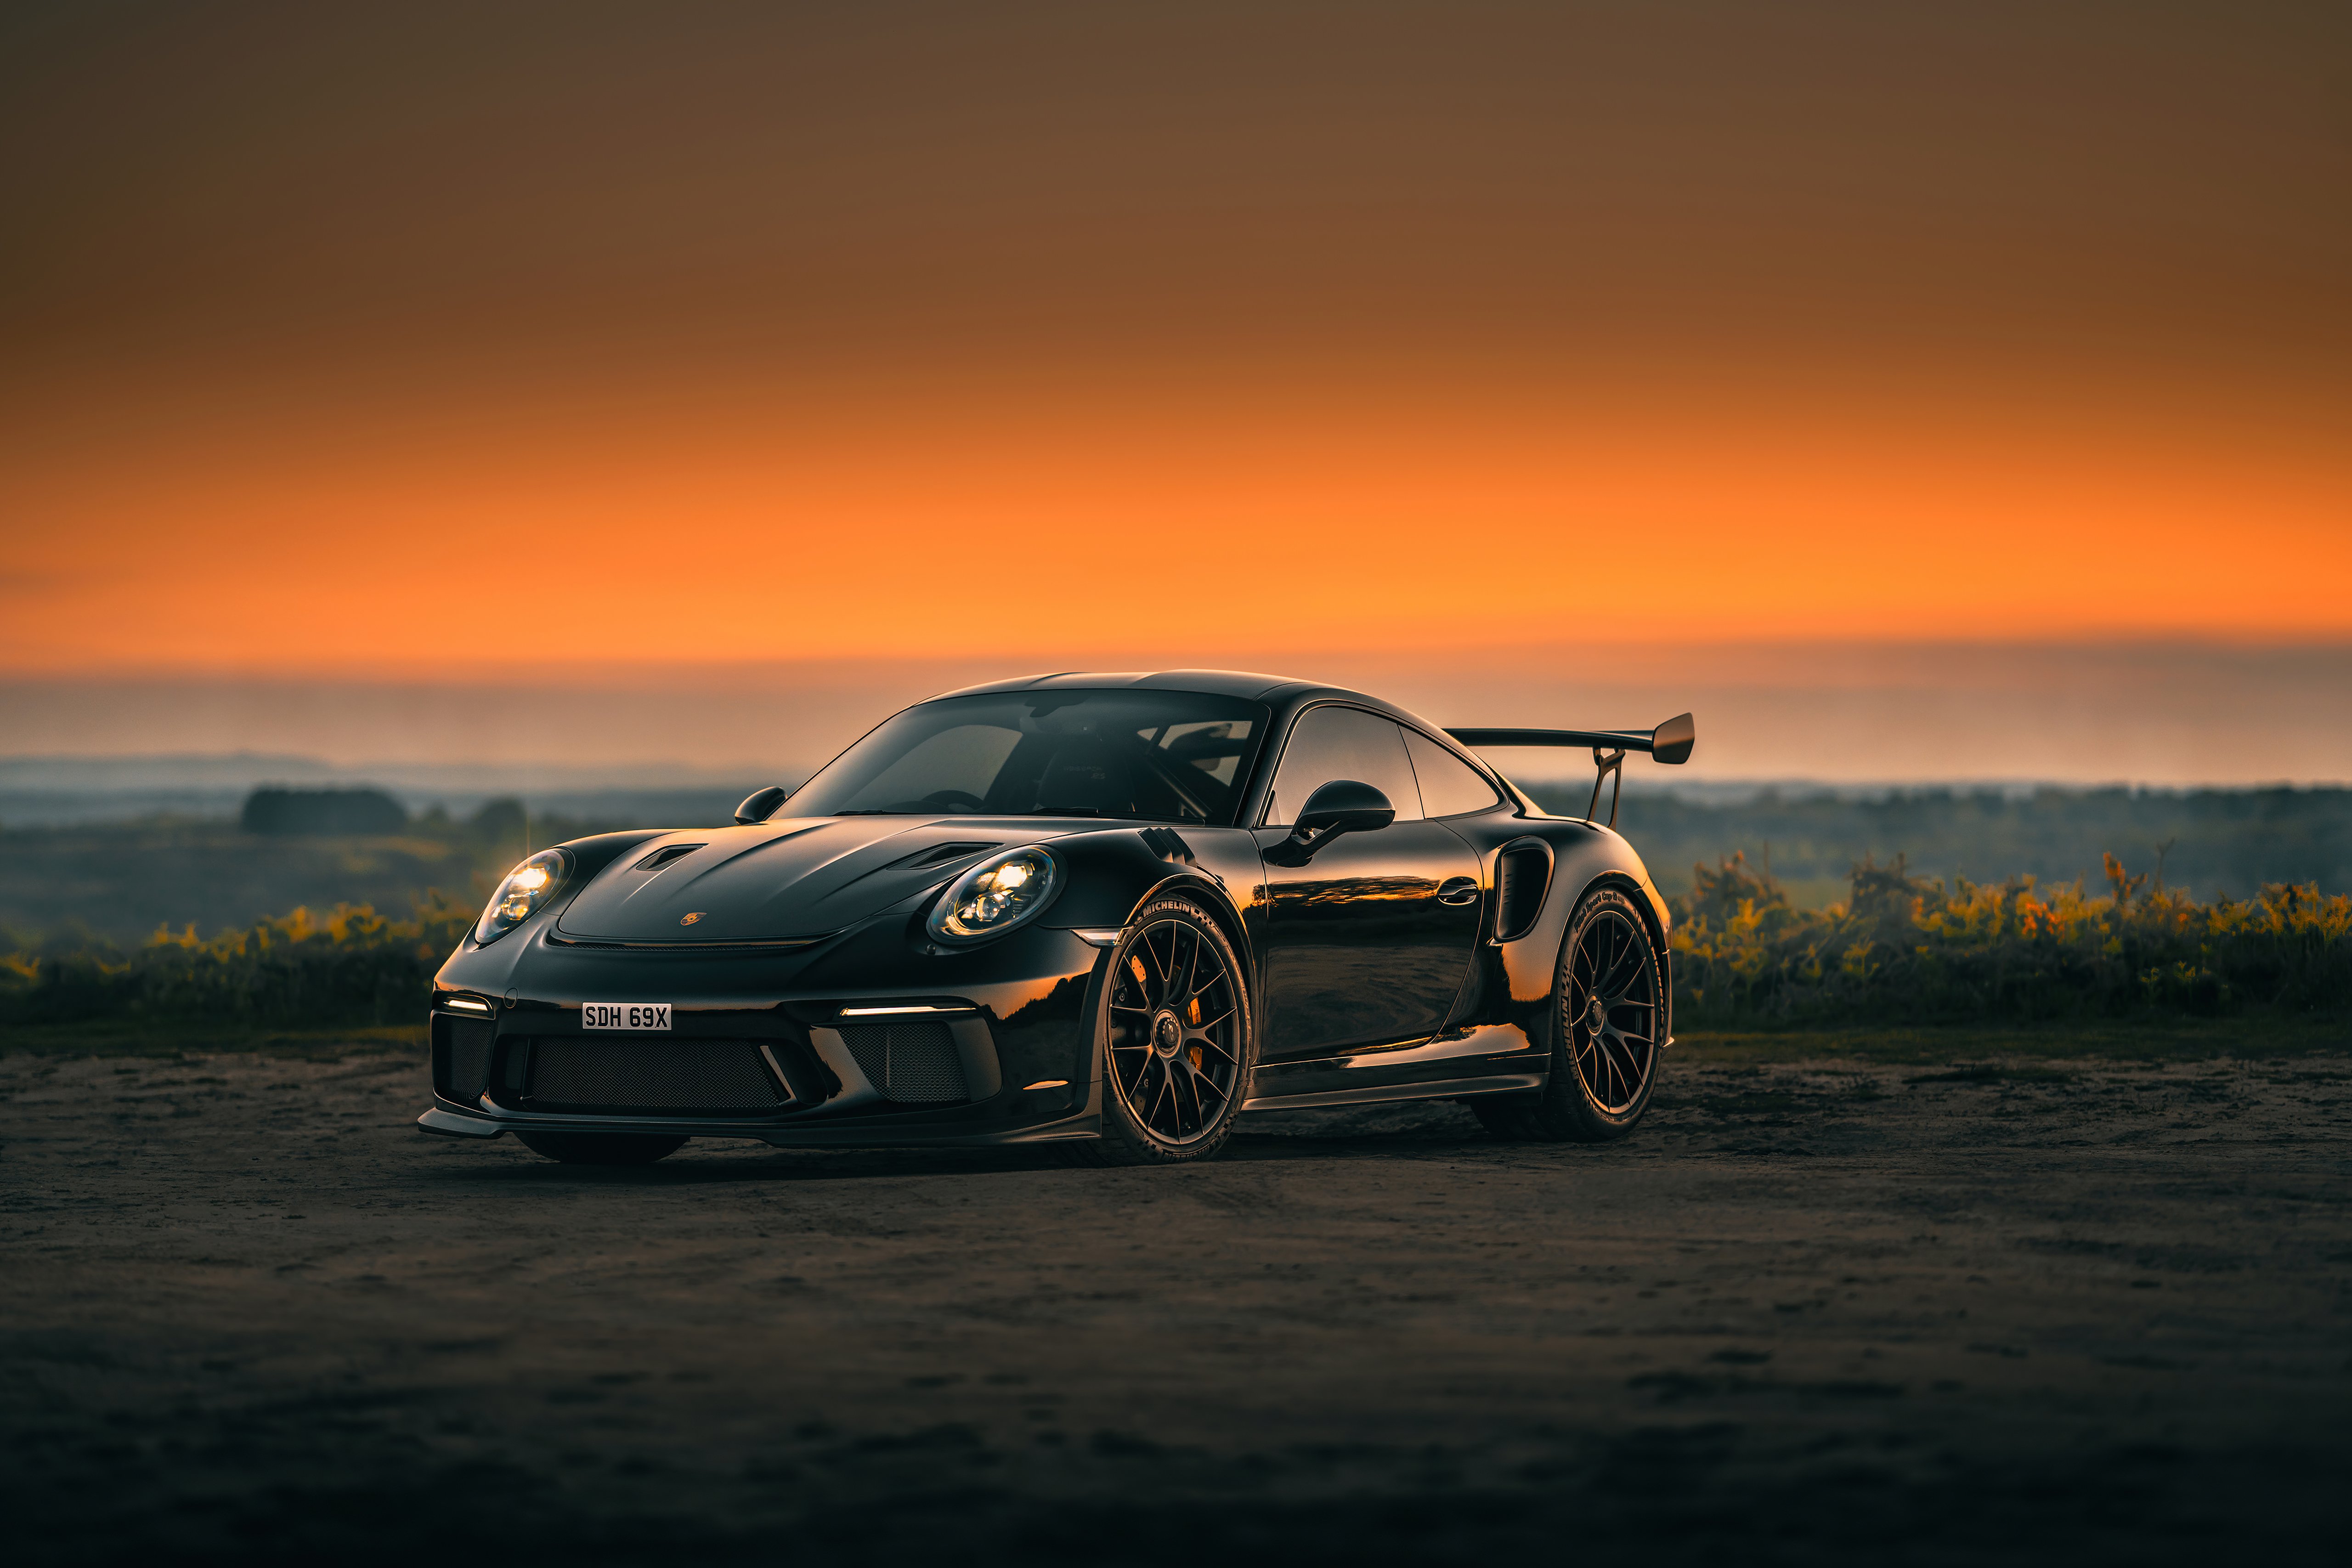 Porsche 911 GT3 HD Wallpaper and Background